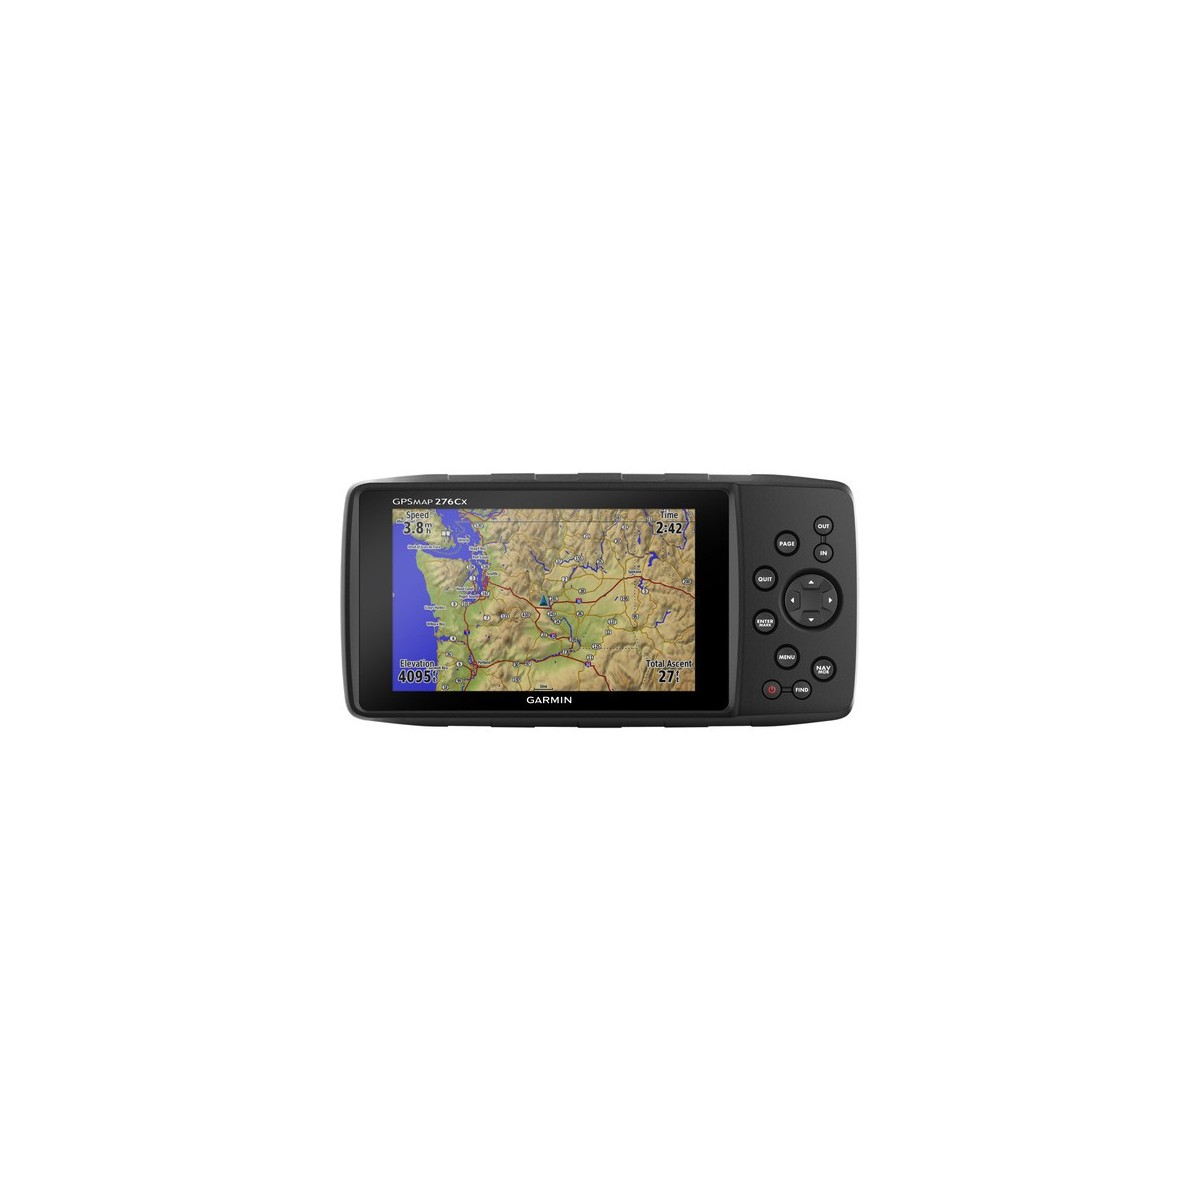 Garmin GPSMAP 276Cx - NMEA 0183 - Internal - Internal storage - 12.7 cm (5) - 800 x 480 pixels - Flash